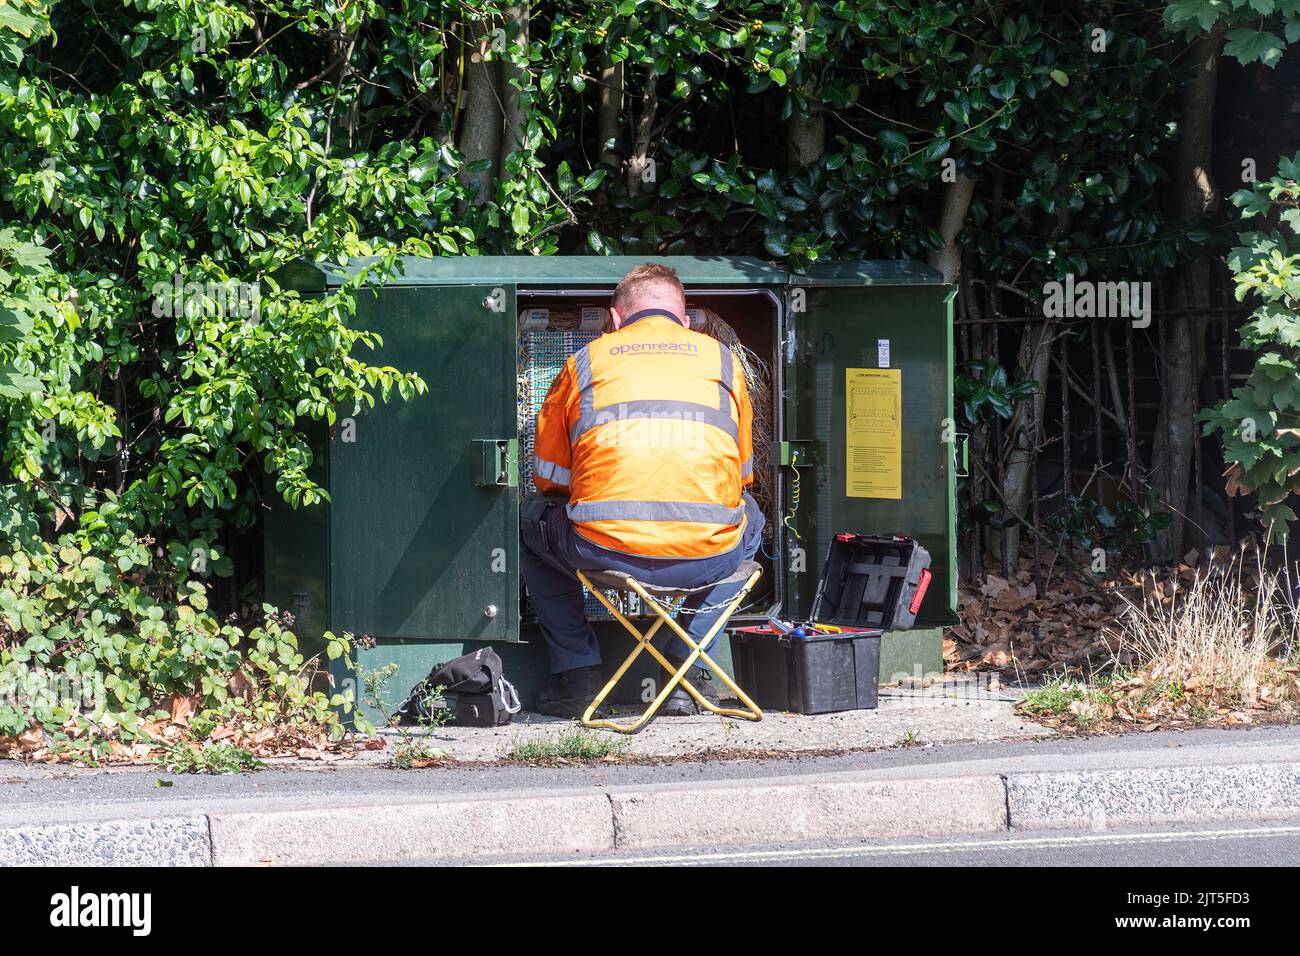 Ingegnere Openreach che lavora in una scatola verde con cavi di comunicazione, mantenendo la rete telefonica e a banda larga, Regno Unito Foto Stock